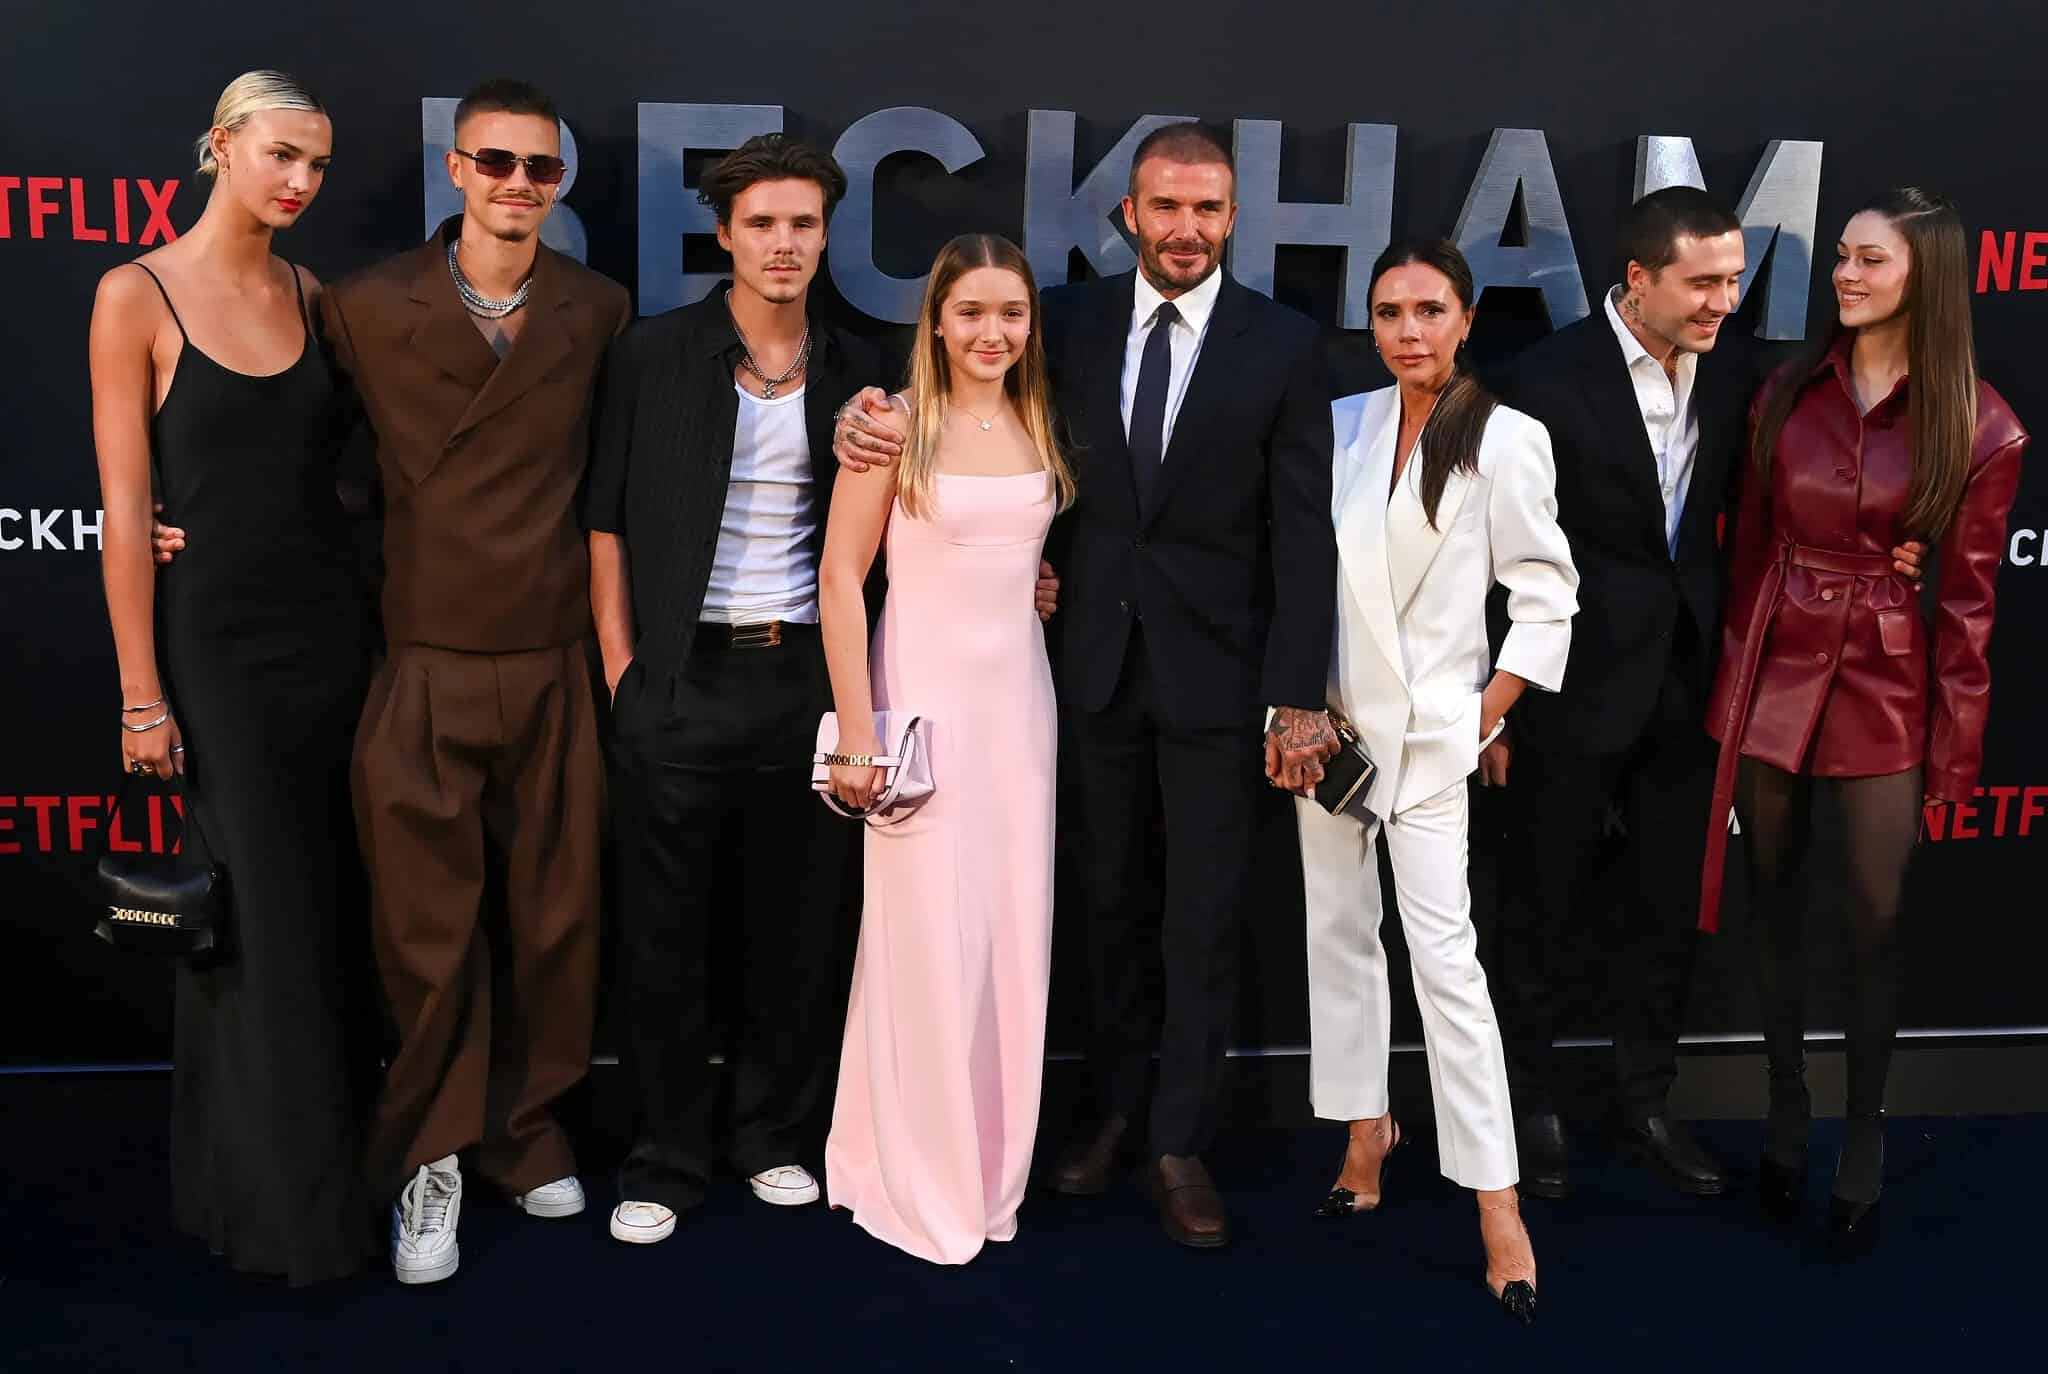 Football Fans Spot A Huge Lie In Netflix's Beckham Documentary